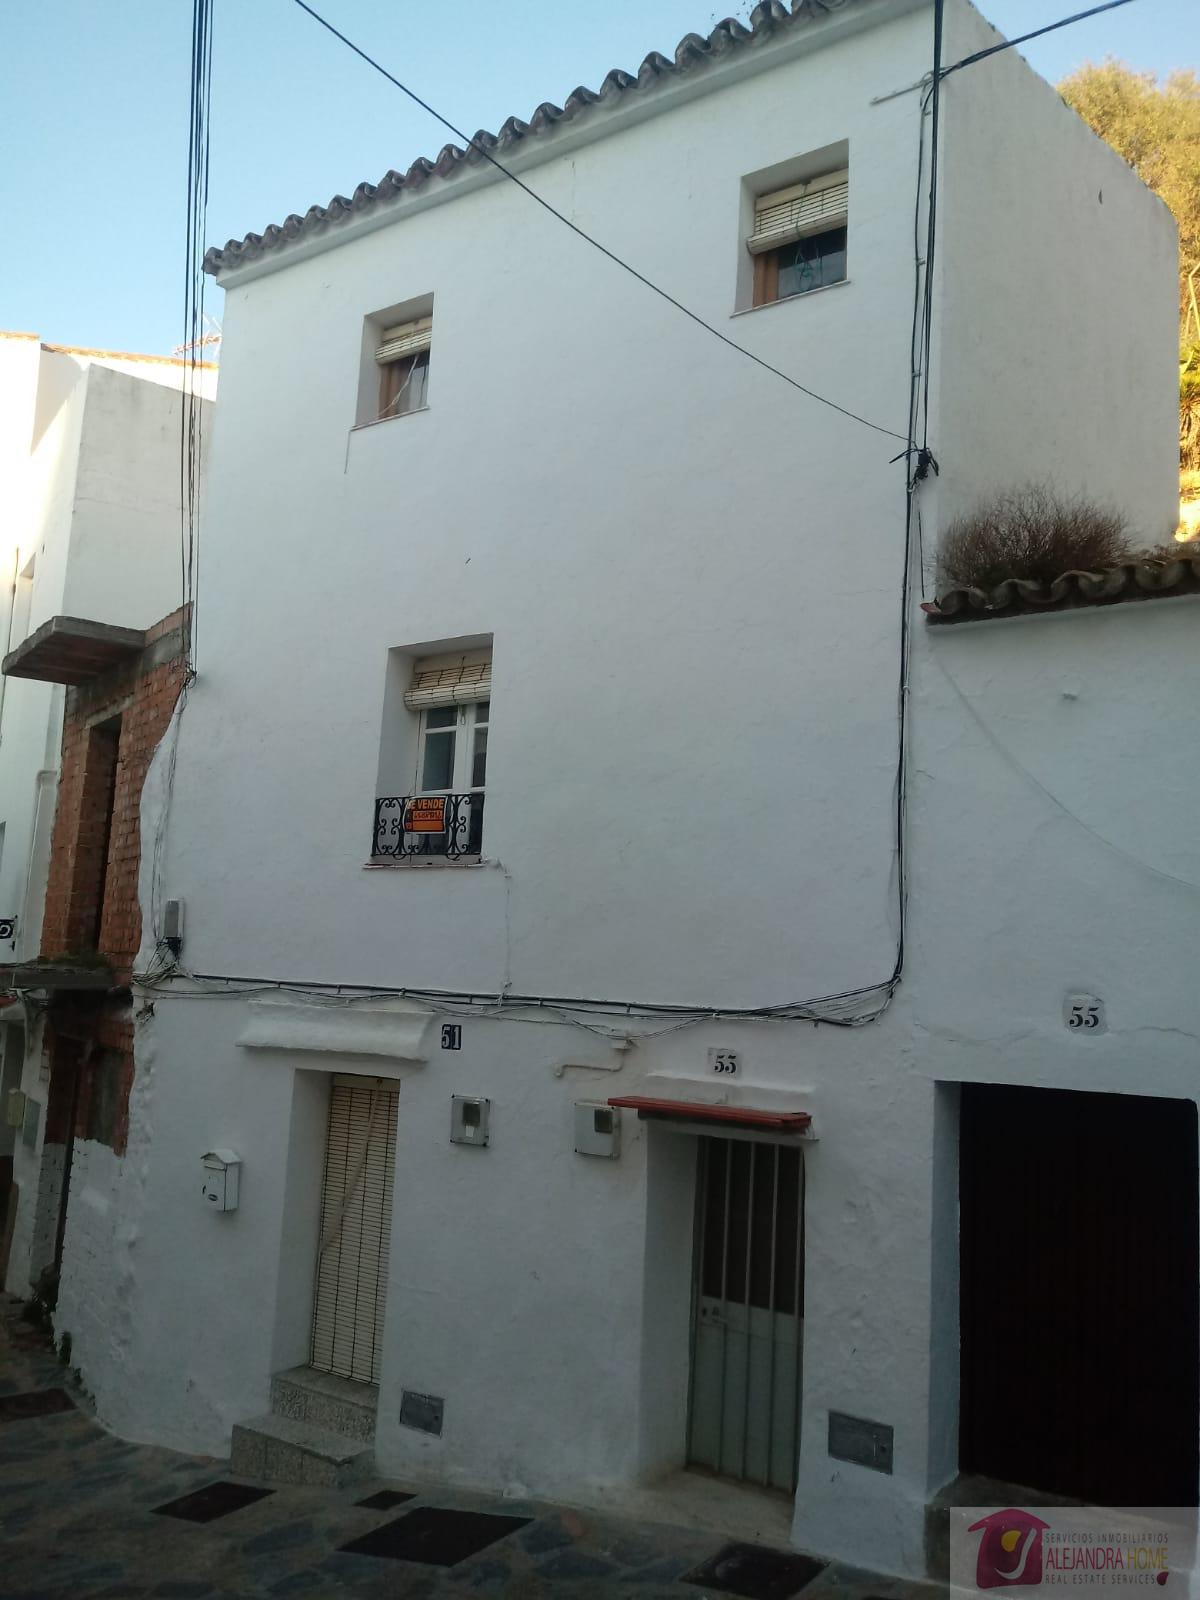 Köp av hus i Casares